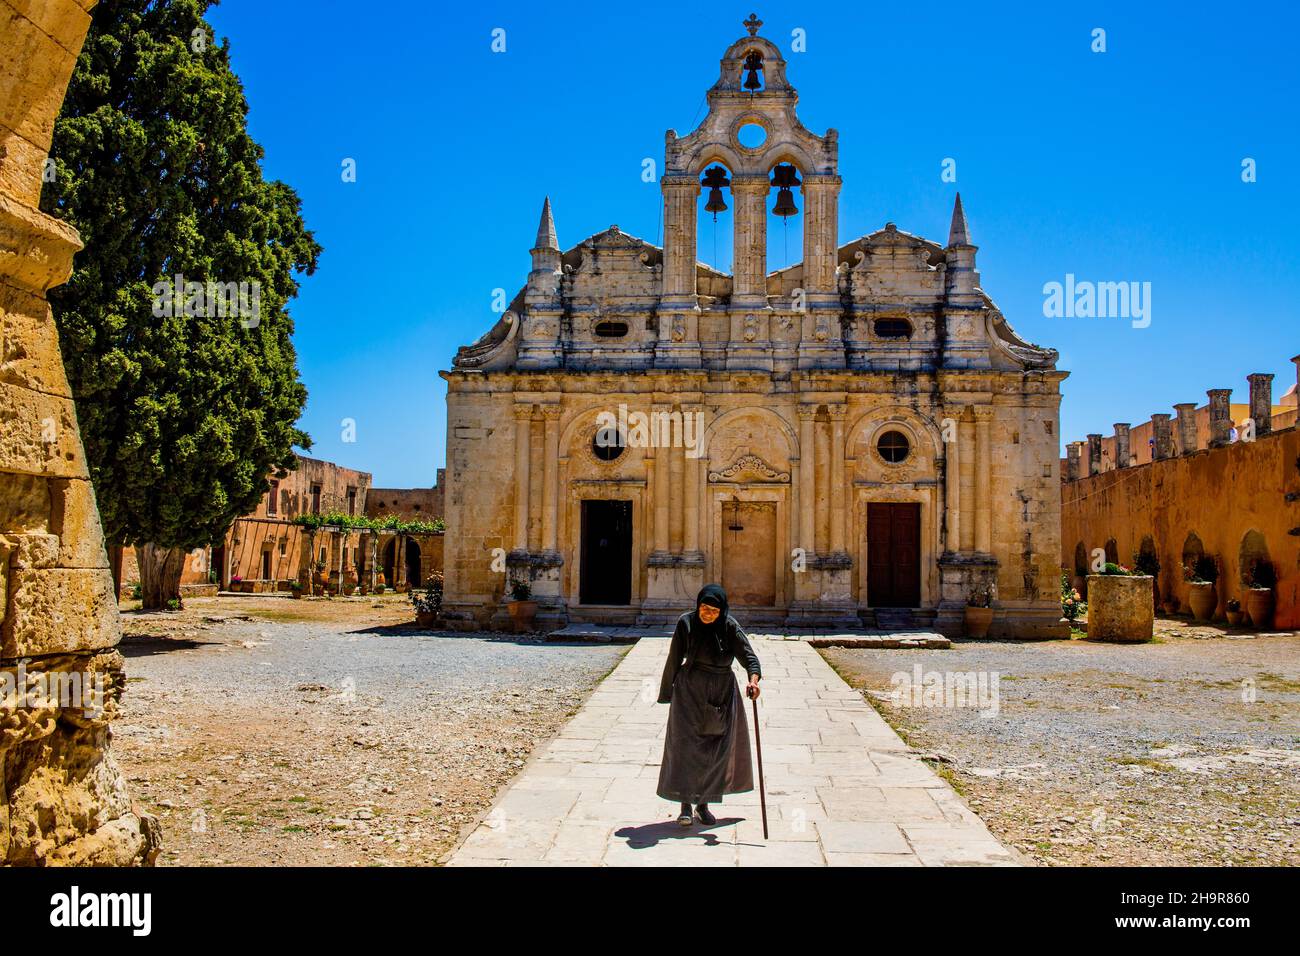 Chiesa del monastero con facciata rinascimentale, monumento nazionale più importante di Creta, Moni Arkadi, Moni Arkadi, Creta, Grecia Foto Stock